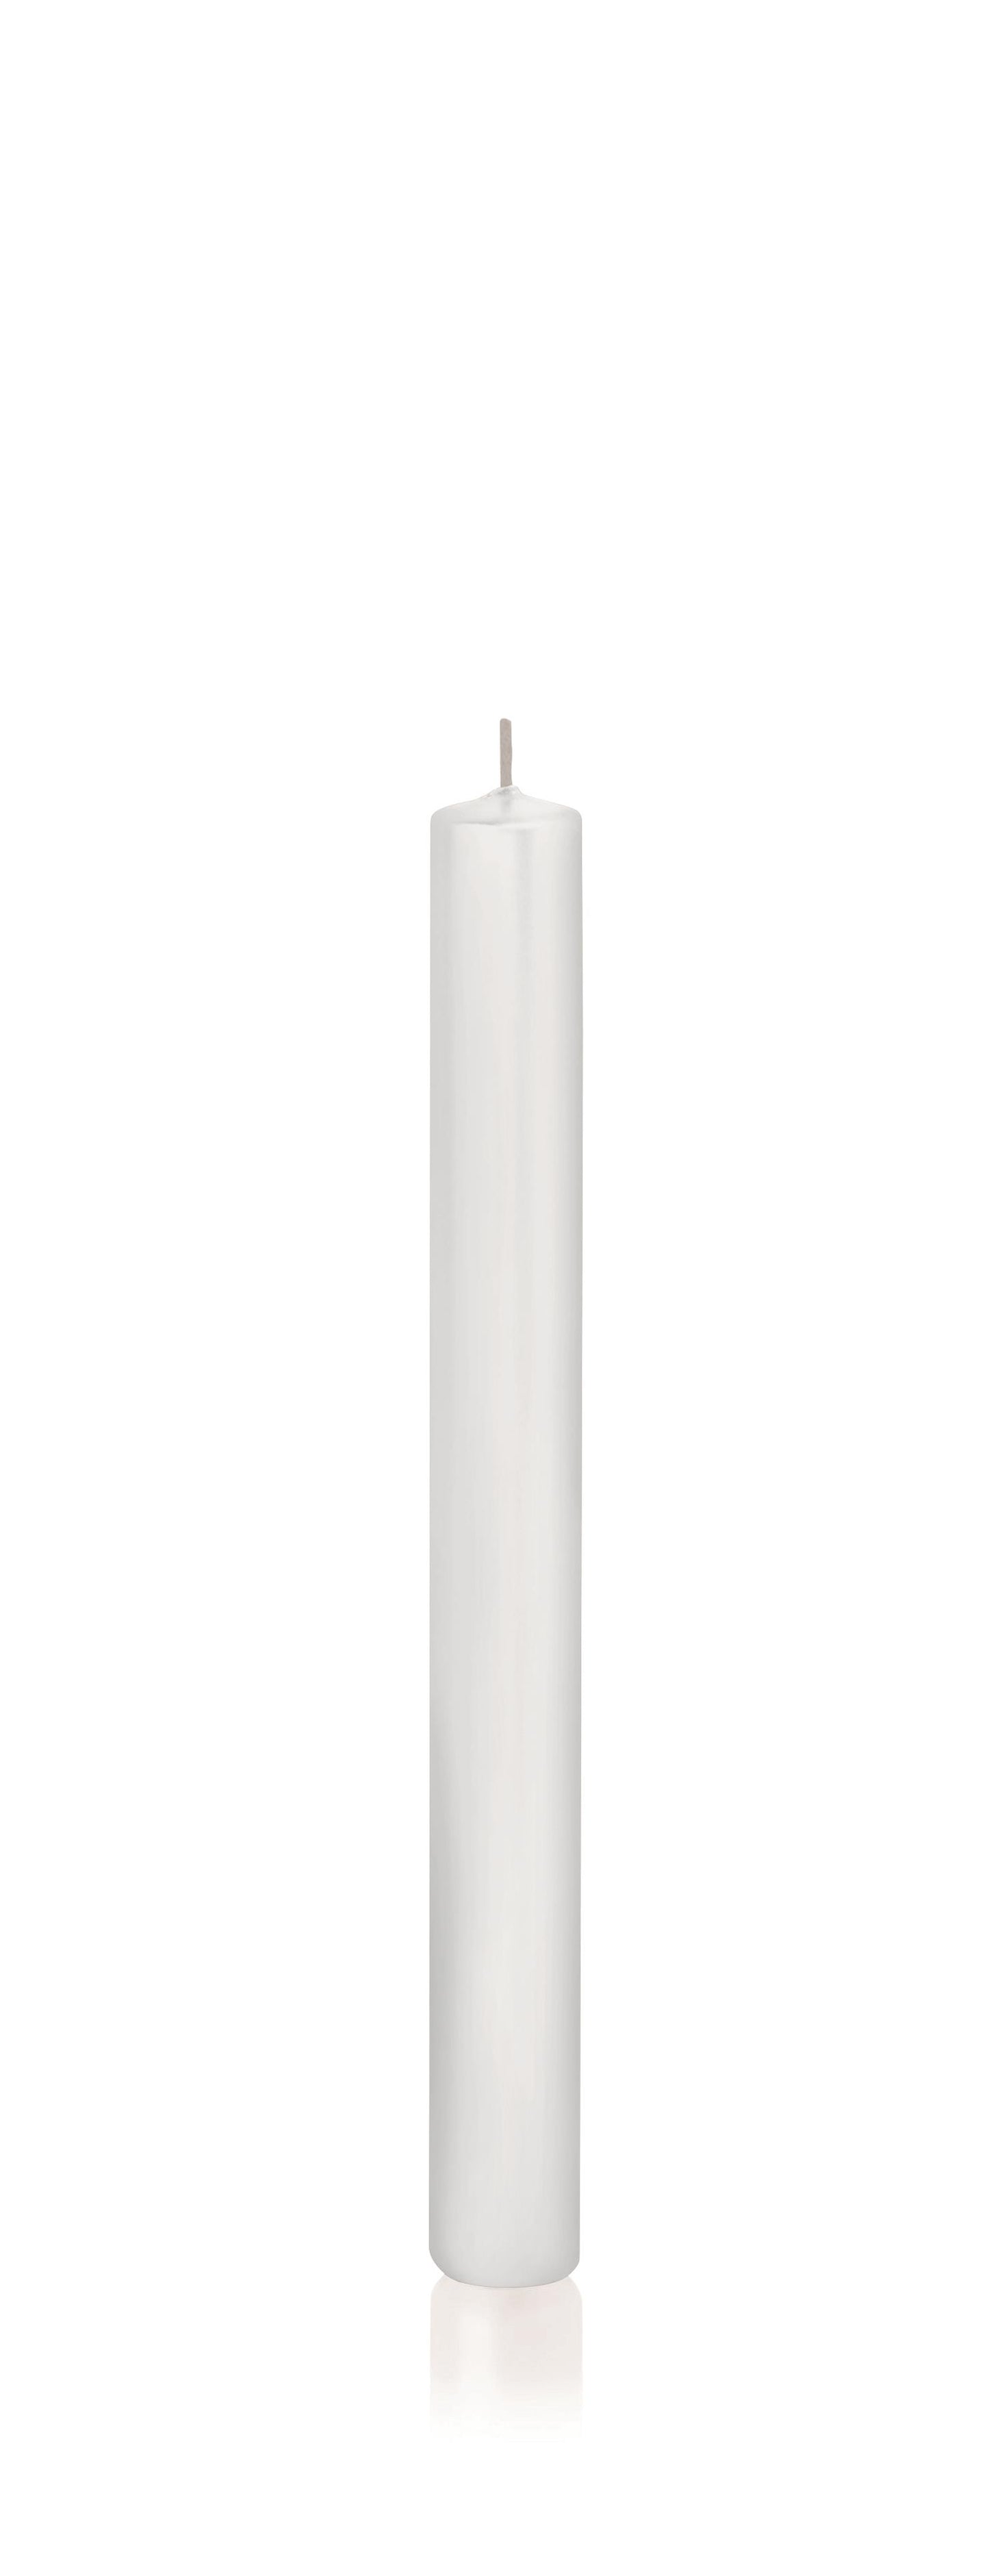 10x Stabkerzen in Cellophan 250/23mm (Weiß)